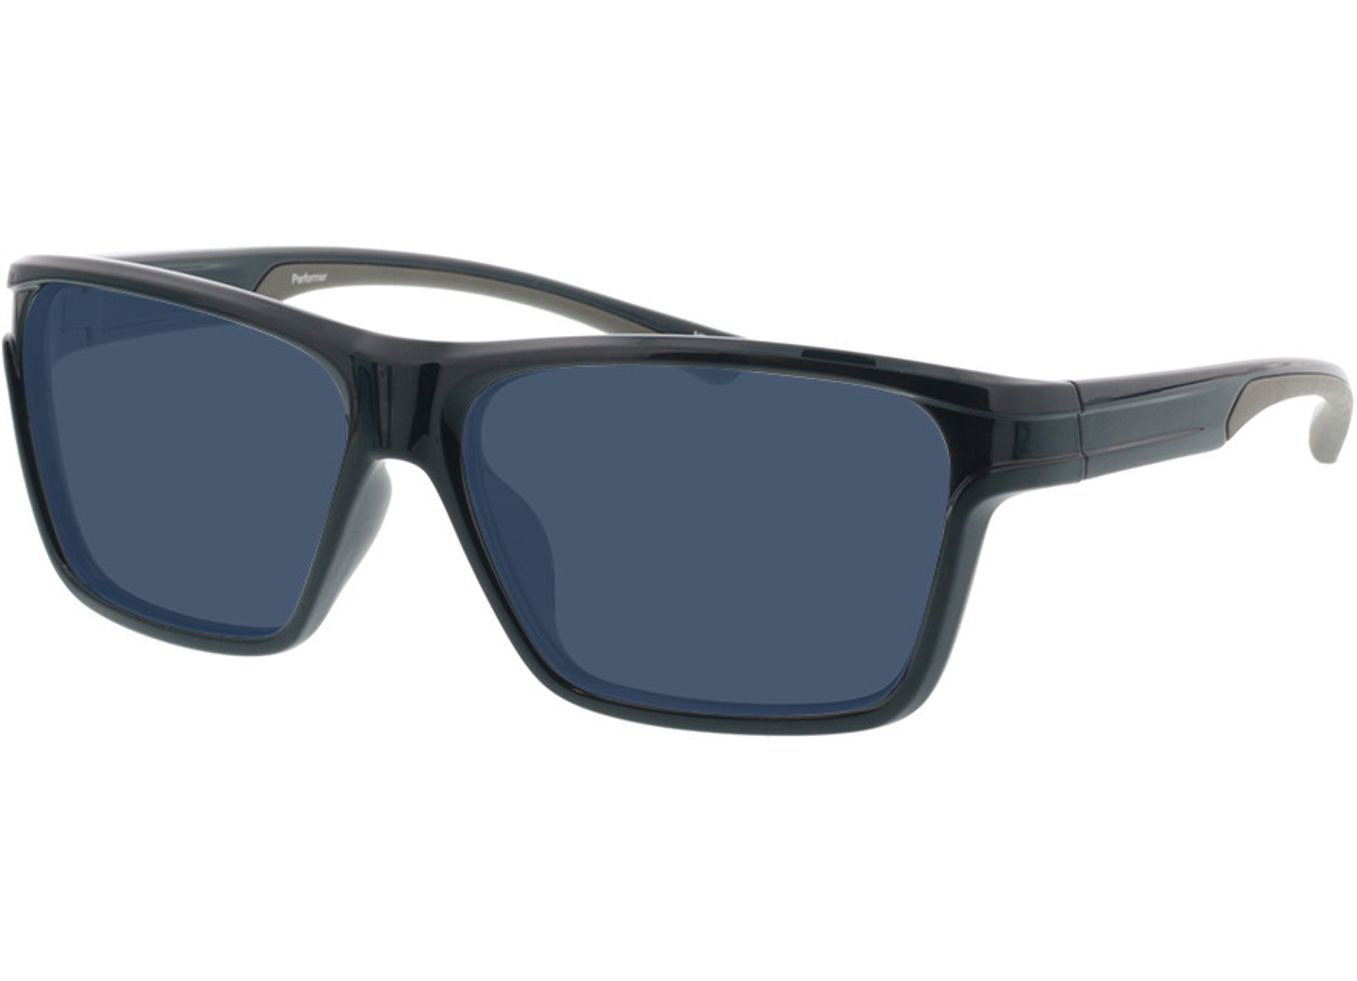 Performer - dunkelblau/grau Sonnenbrille mit Sehstärke, Vollrand, Rechteckig von Active by Brille24